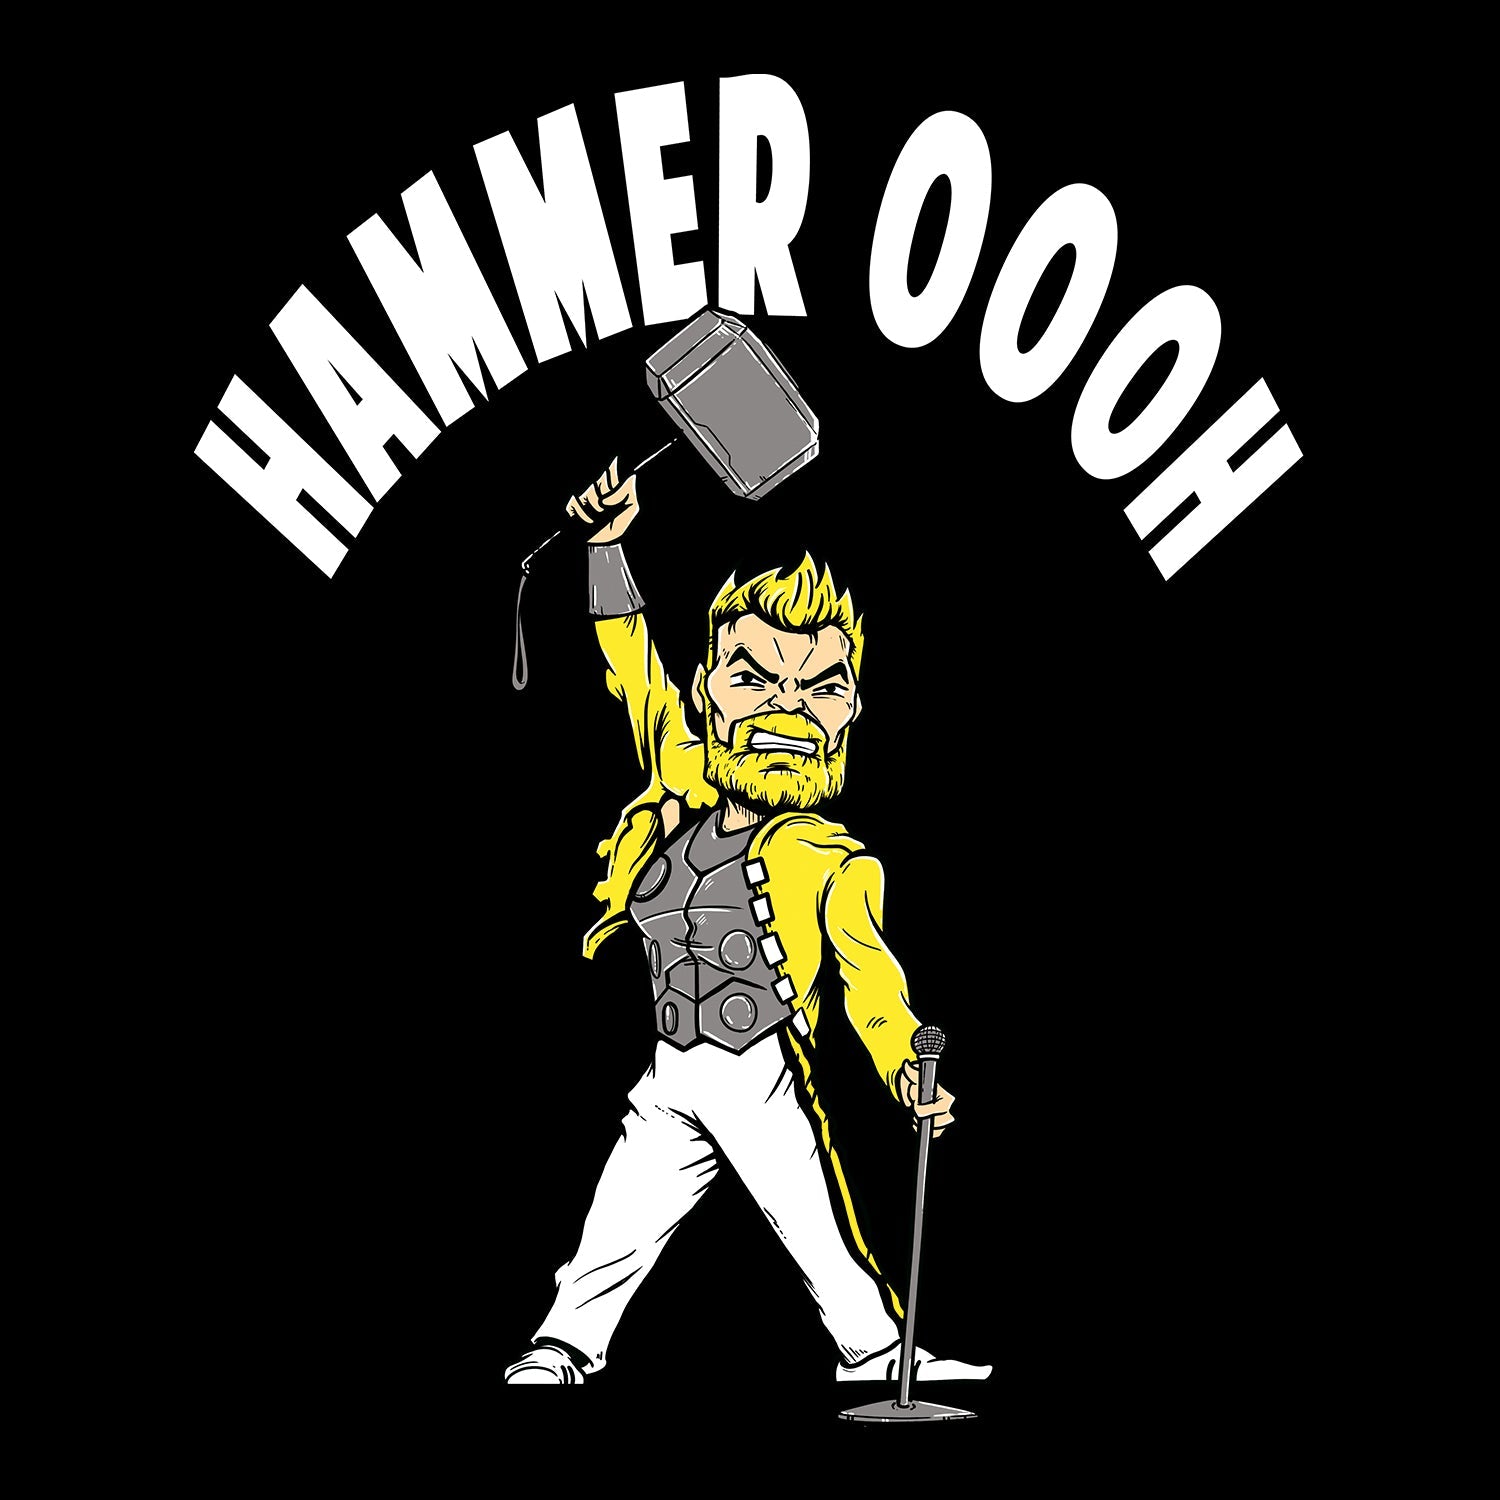 Hammer Ooh! Kids T Shirt